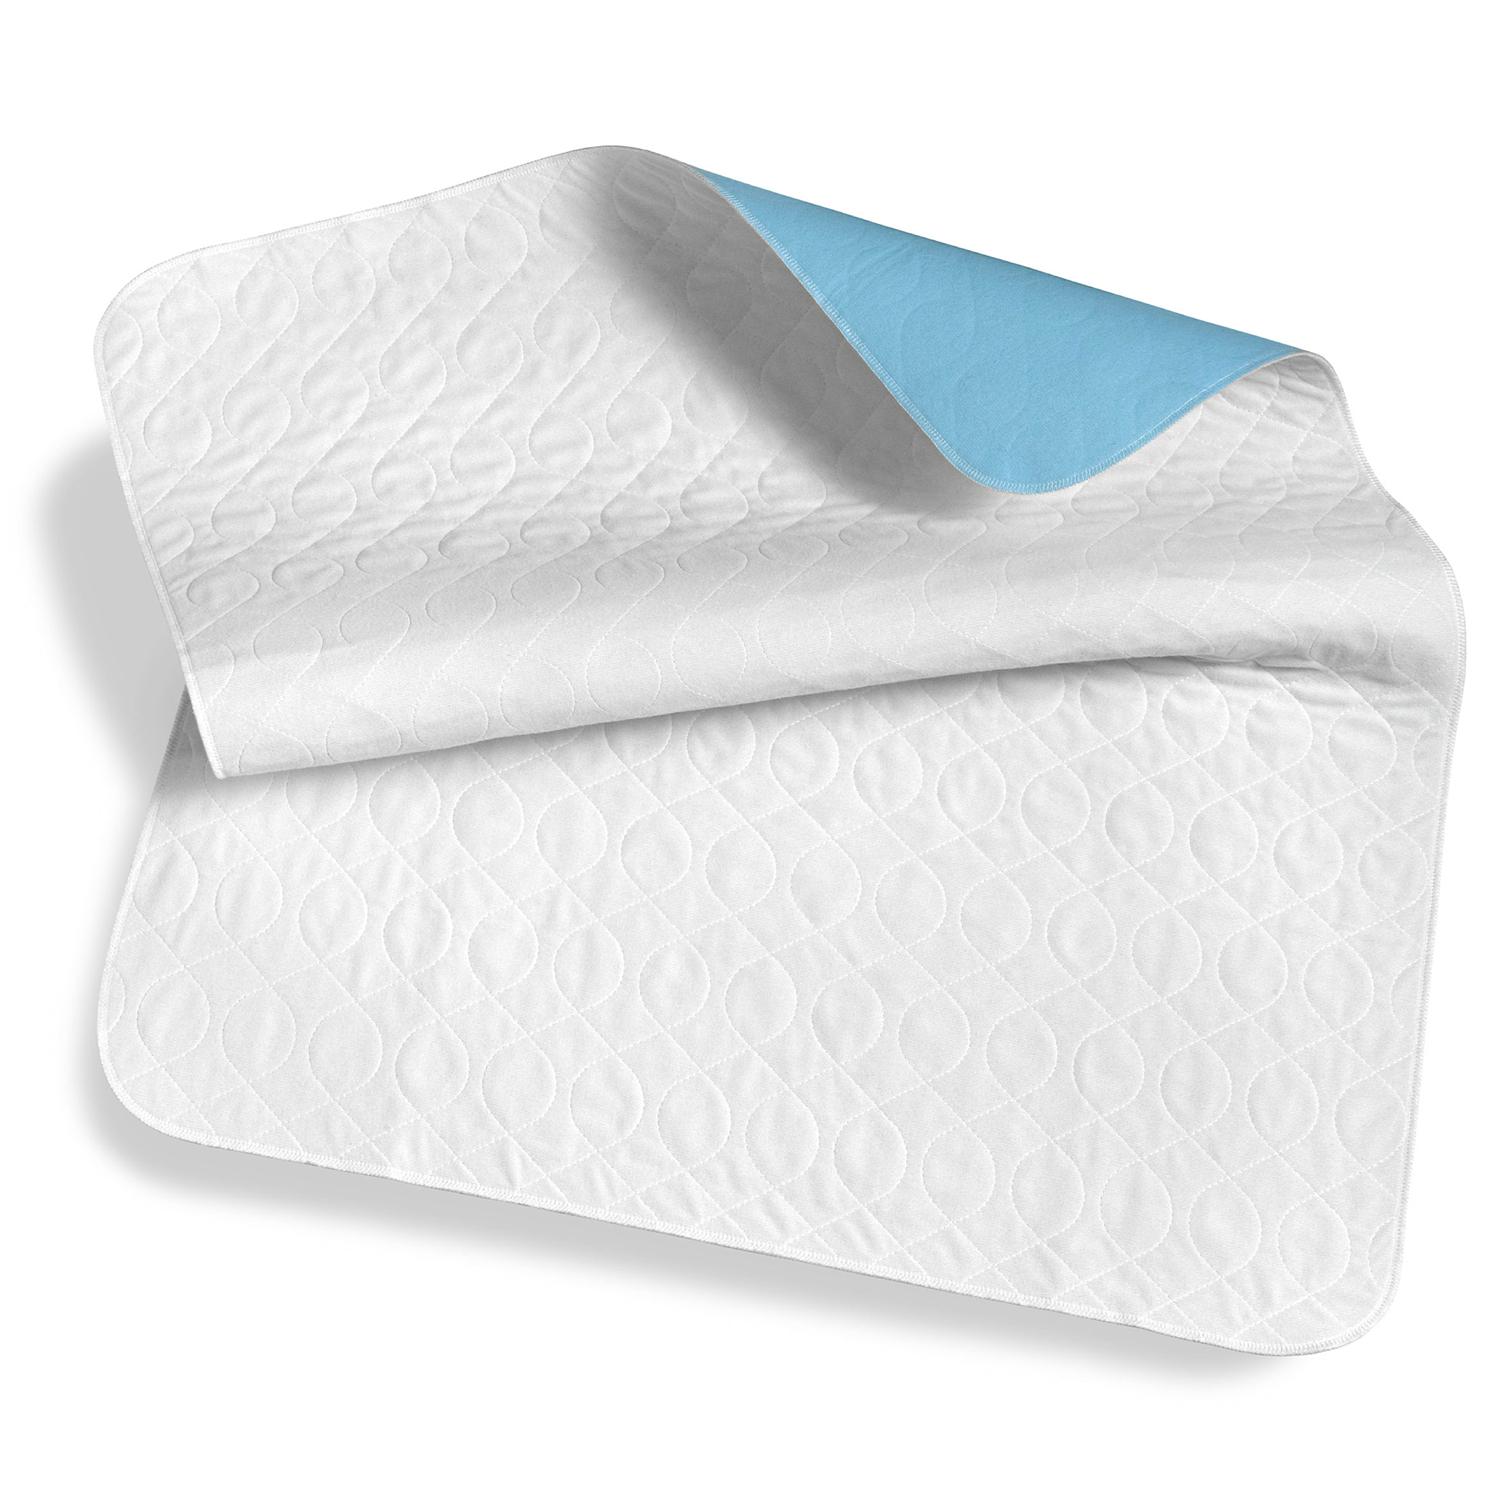 Sleezzz Vital waterproof absorbent fleece mattress topper, 75 x 90 cm, to protect the mattress